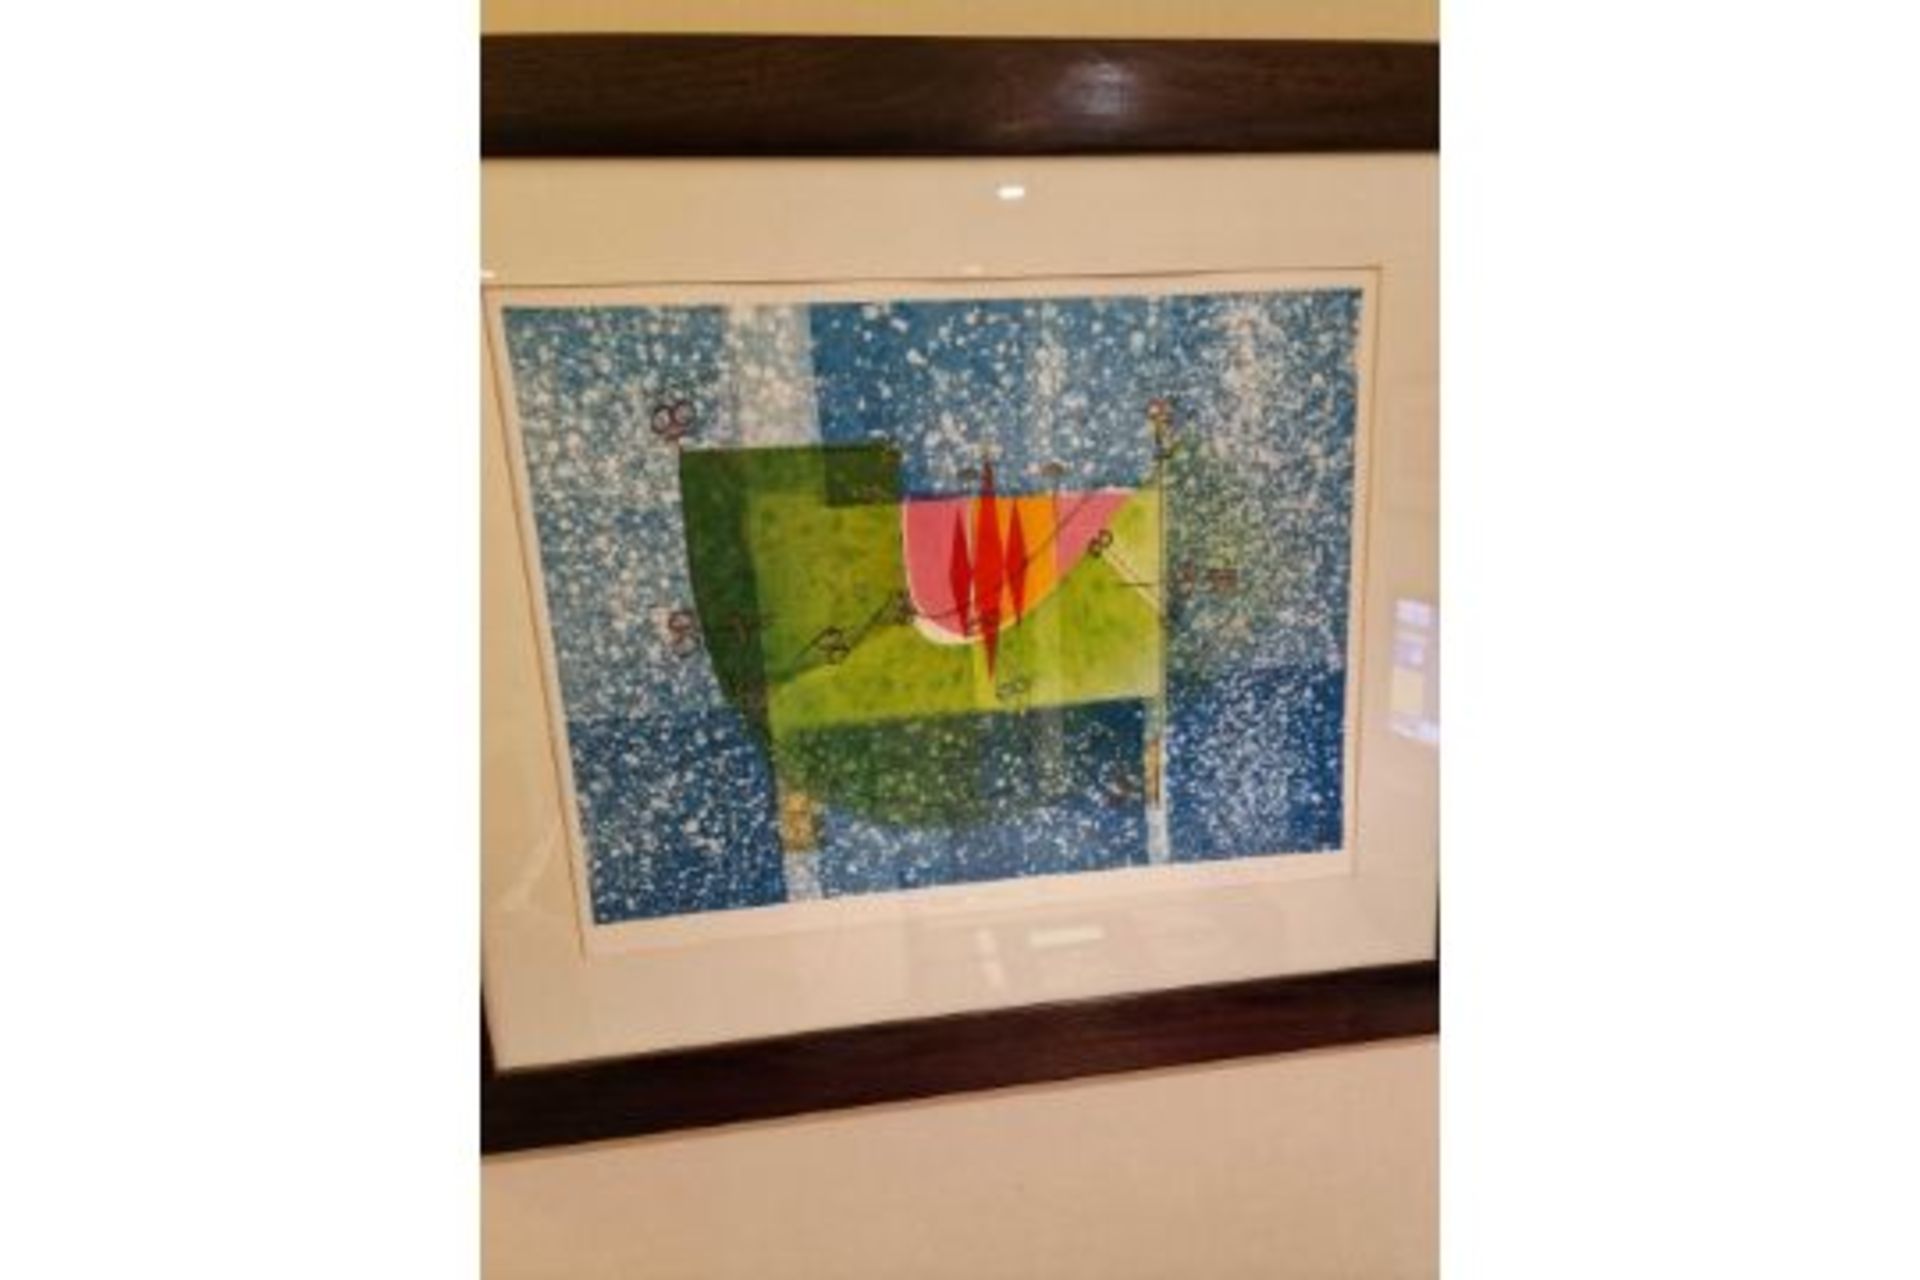 Framed Art Work Titled Diver Vert V Signed In Glazed Walnut Coloured Frame 90 x 77cm - Image 2 of 5